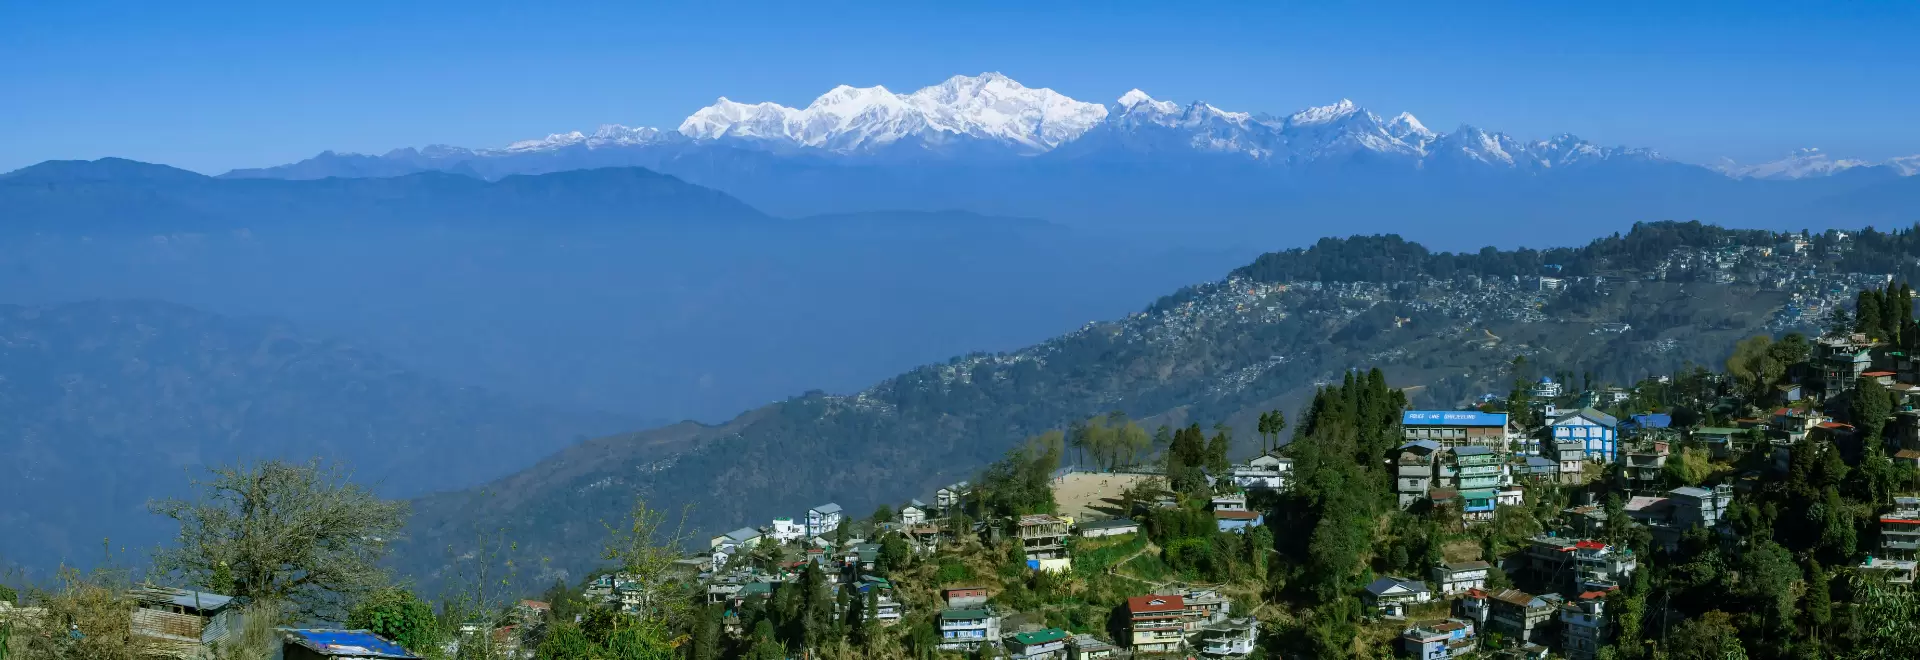 India – Bhutan – Nepal